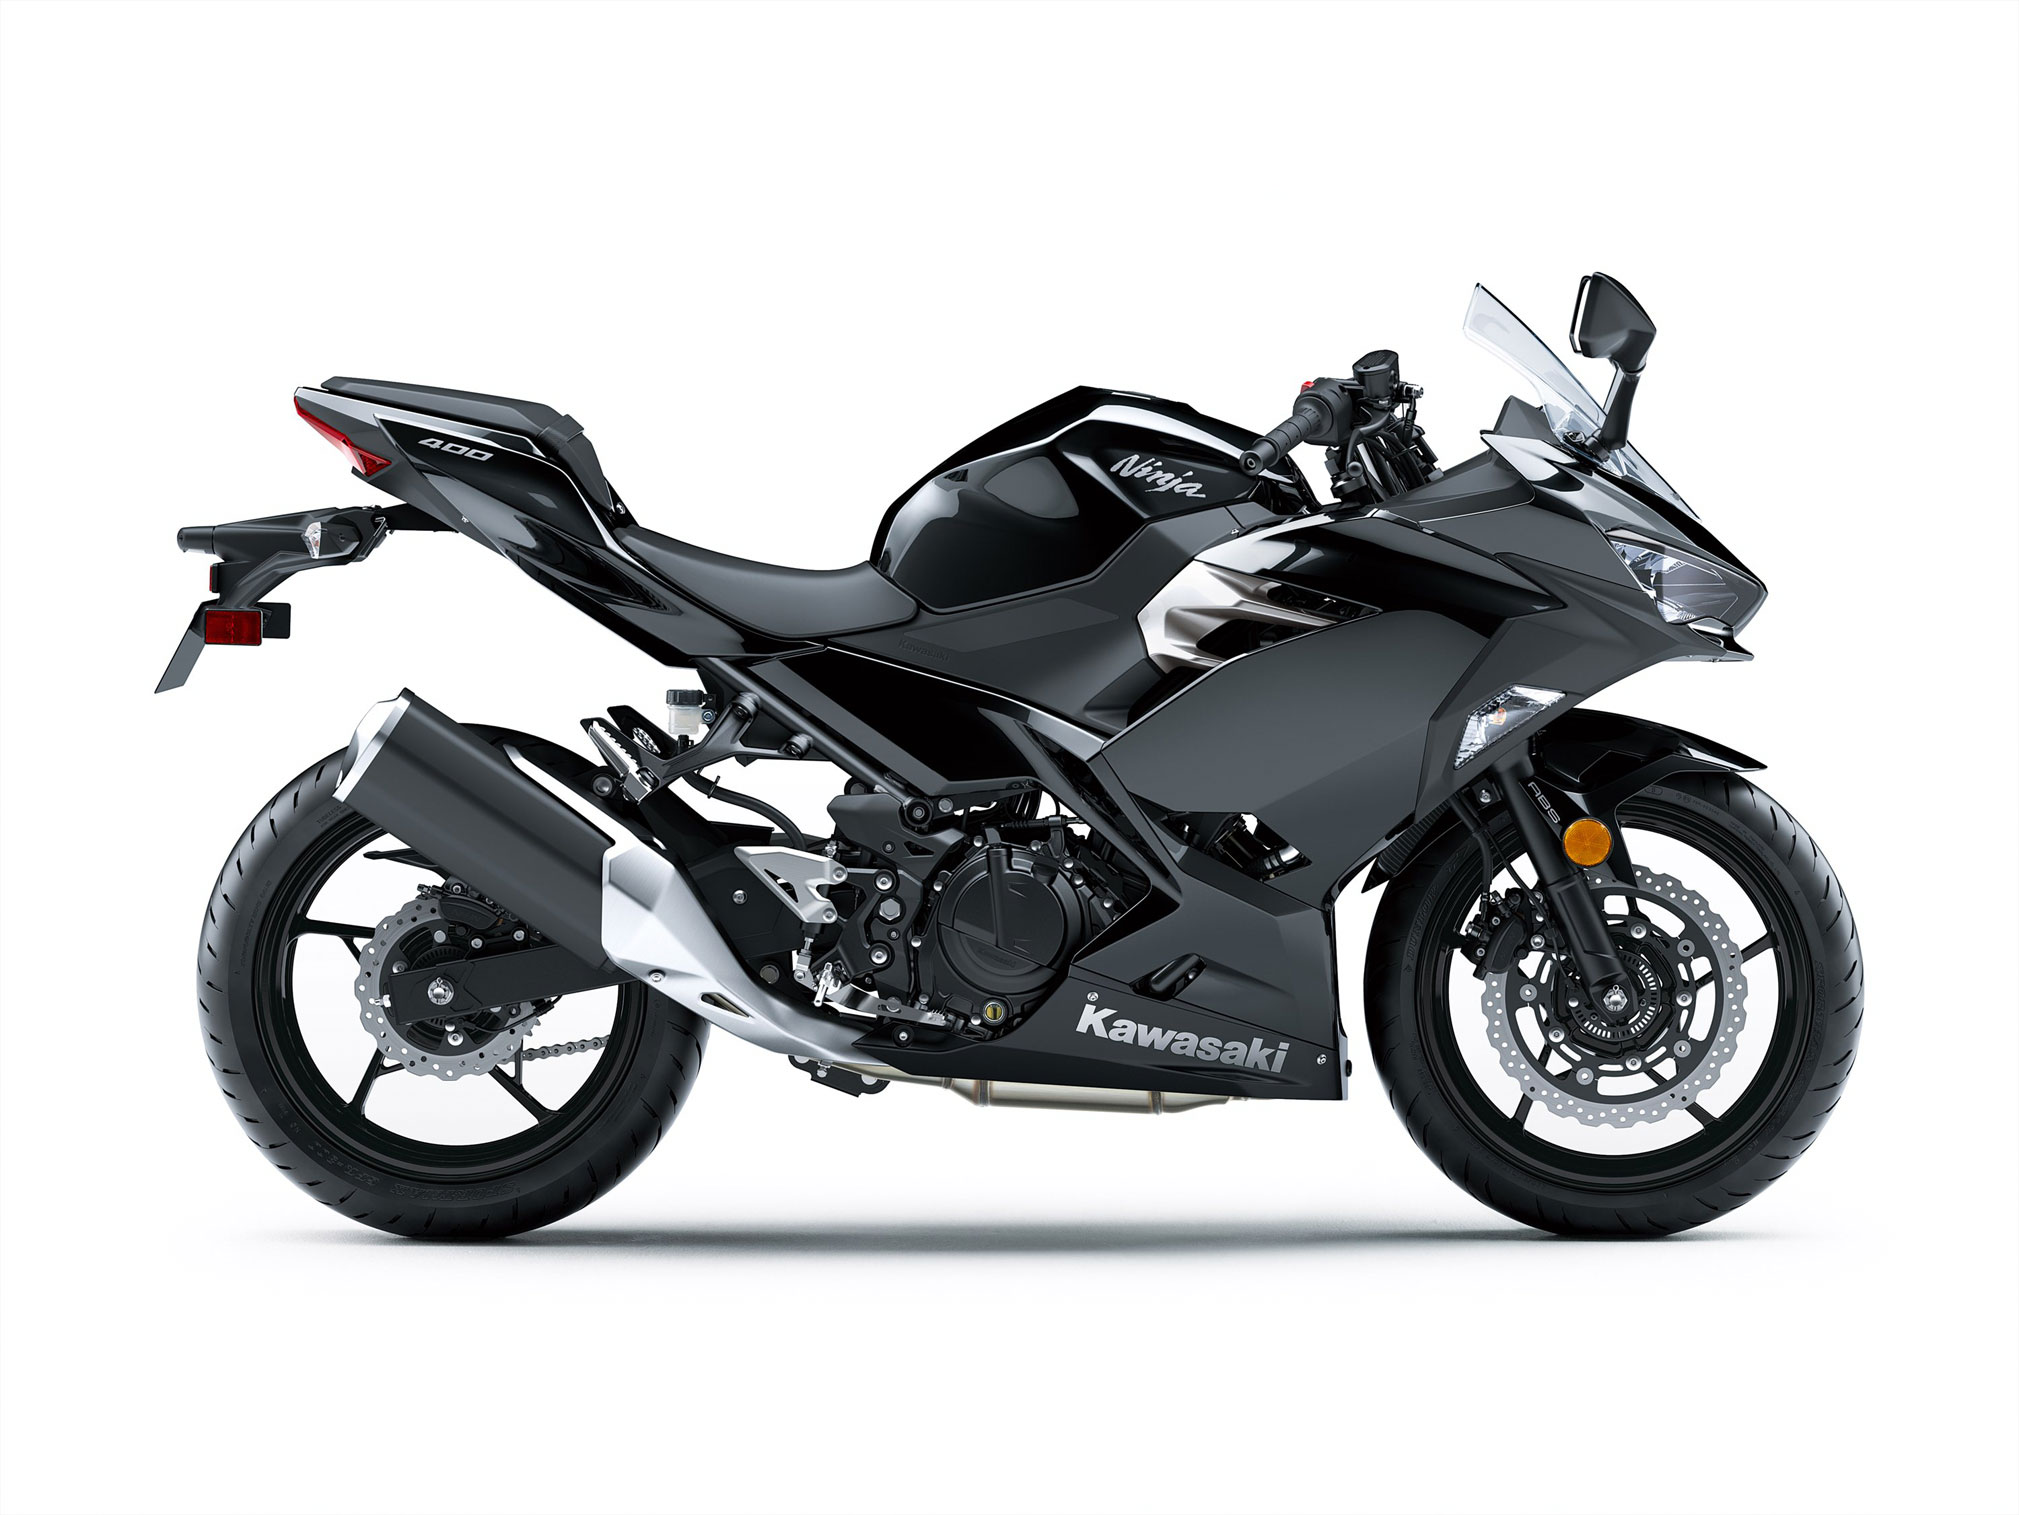 2019 Kawasaki Ninja 400 ABS Guide • Total Motorcycle